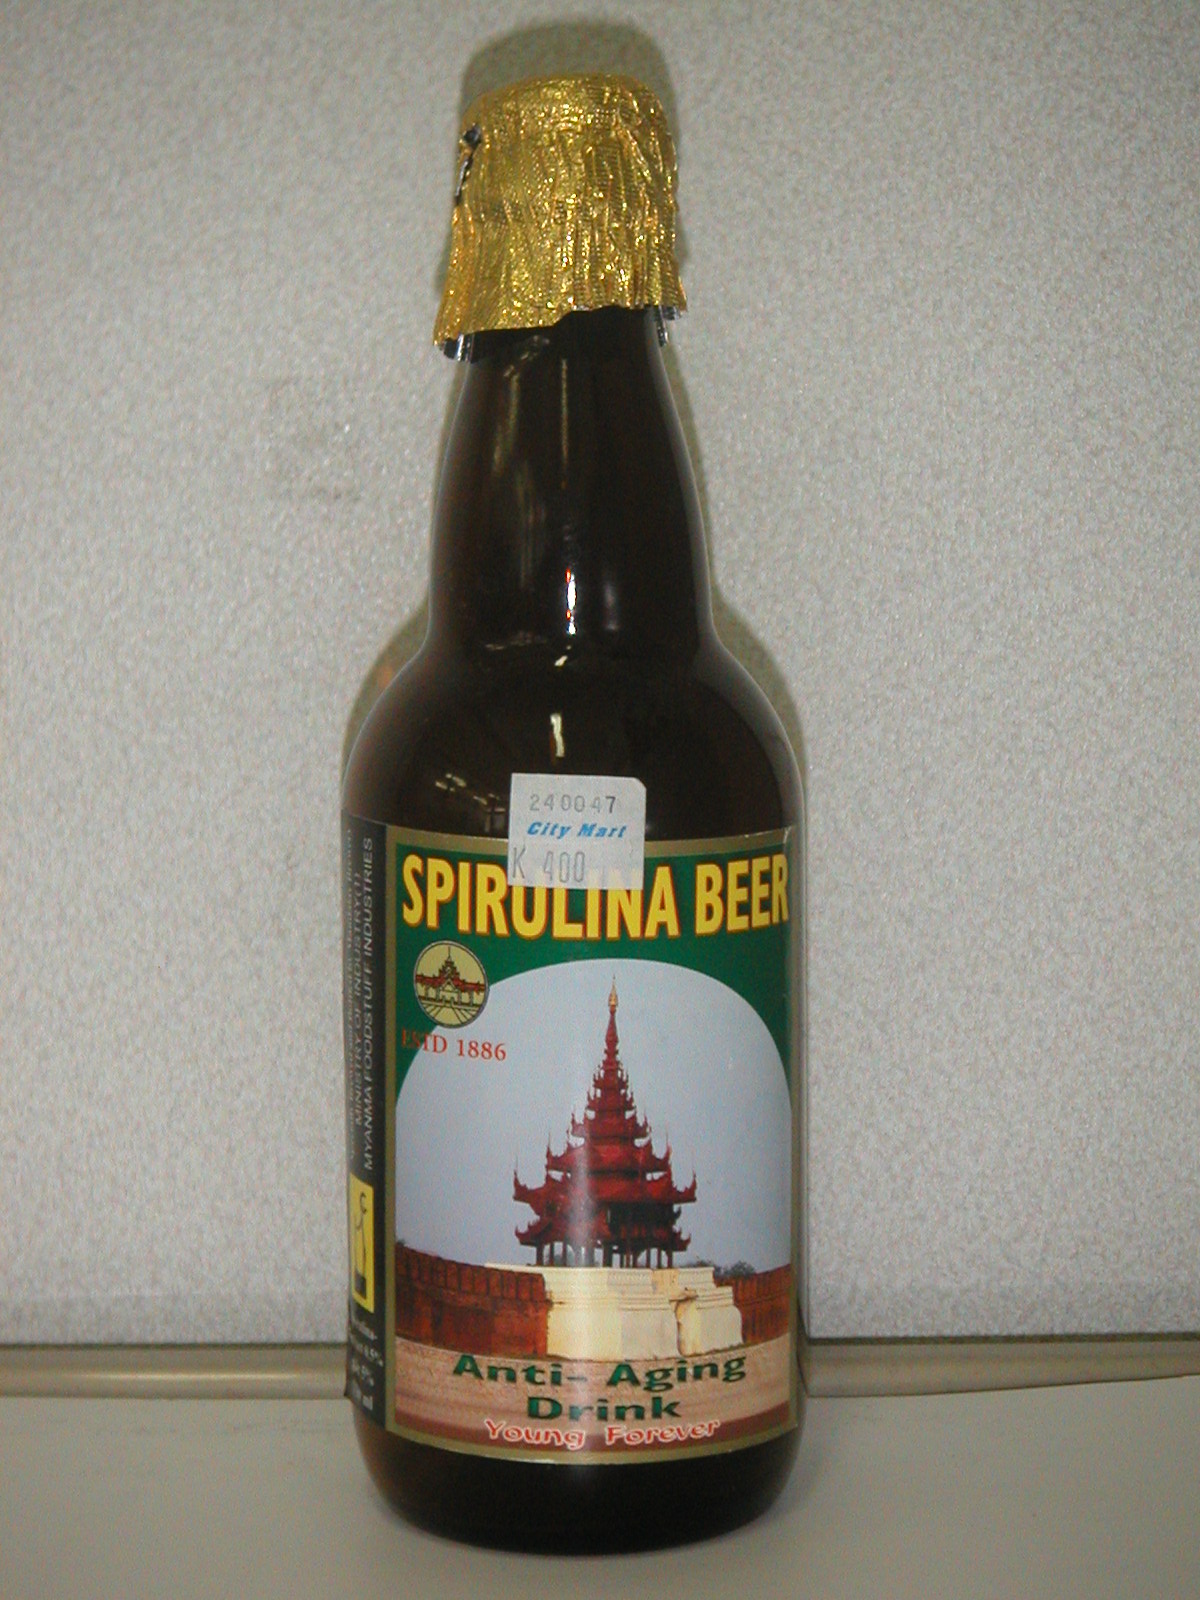 Spirulina Beer